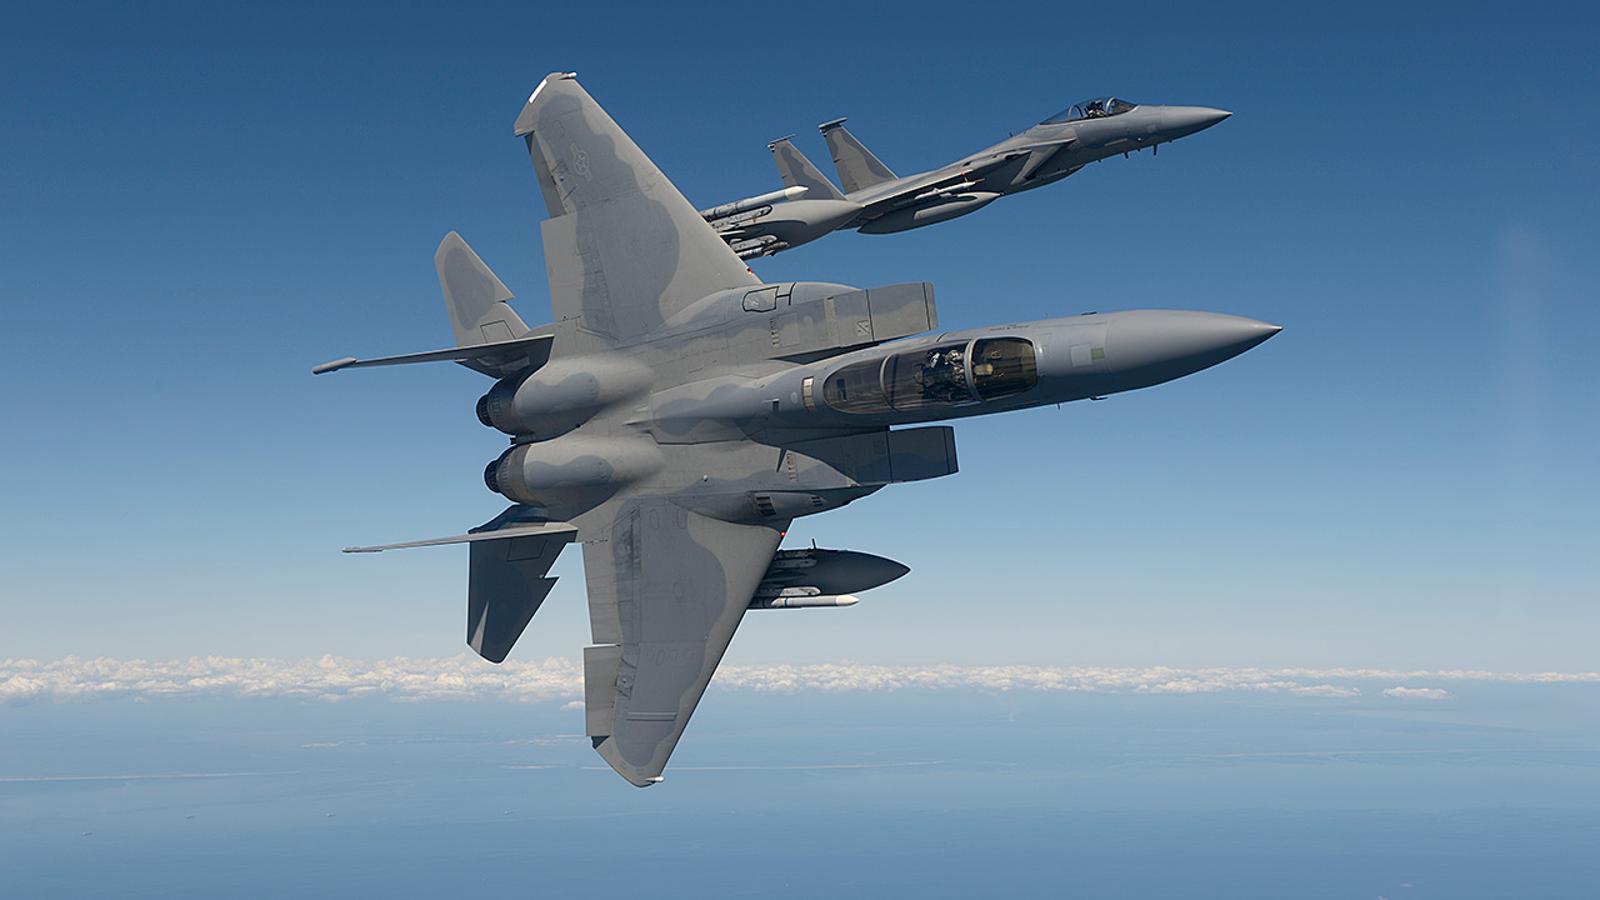 F-15 Eagle. Te presento el caza más rápido de los Estados Unidos. Esta aeronave está diseñada para entrar en combate y ser muy efectiva